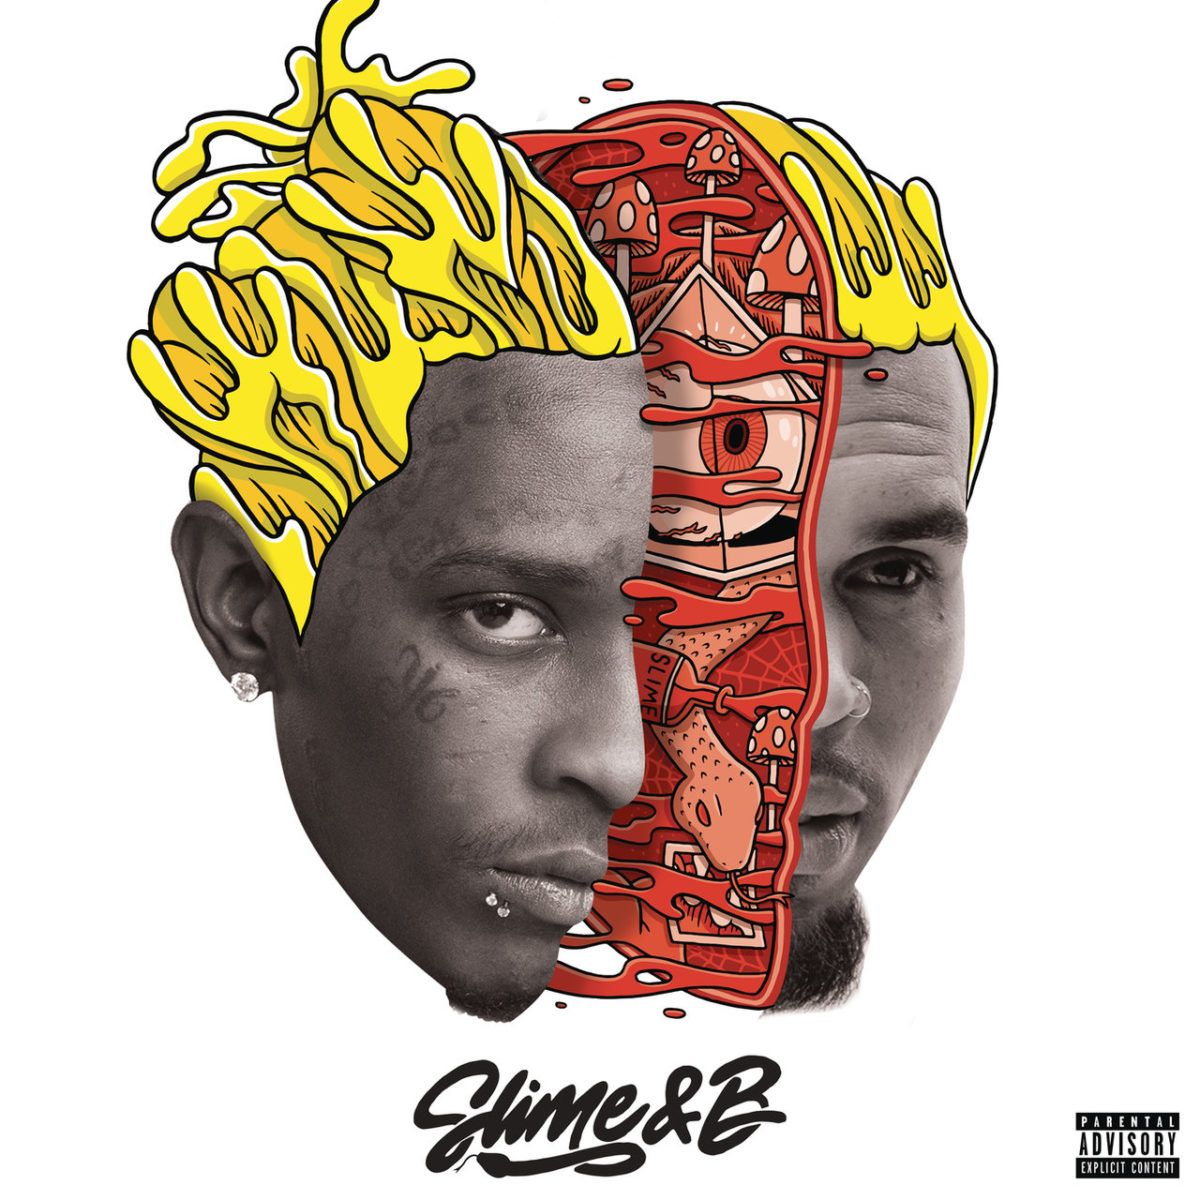 Chris Brown and Young Thug - Slime and B (Cover)